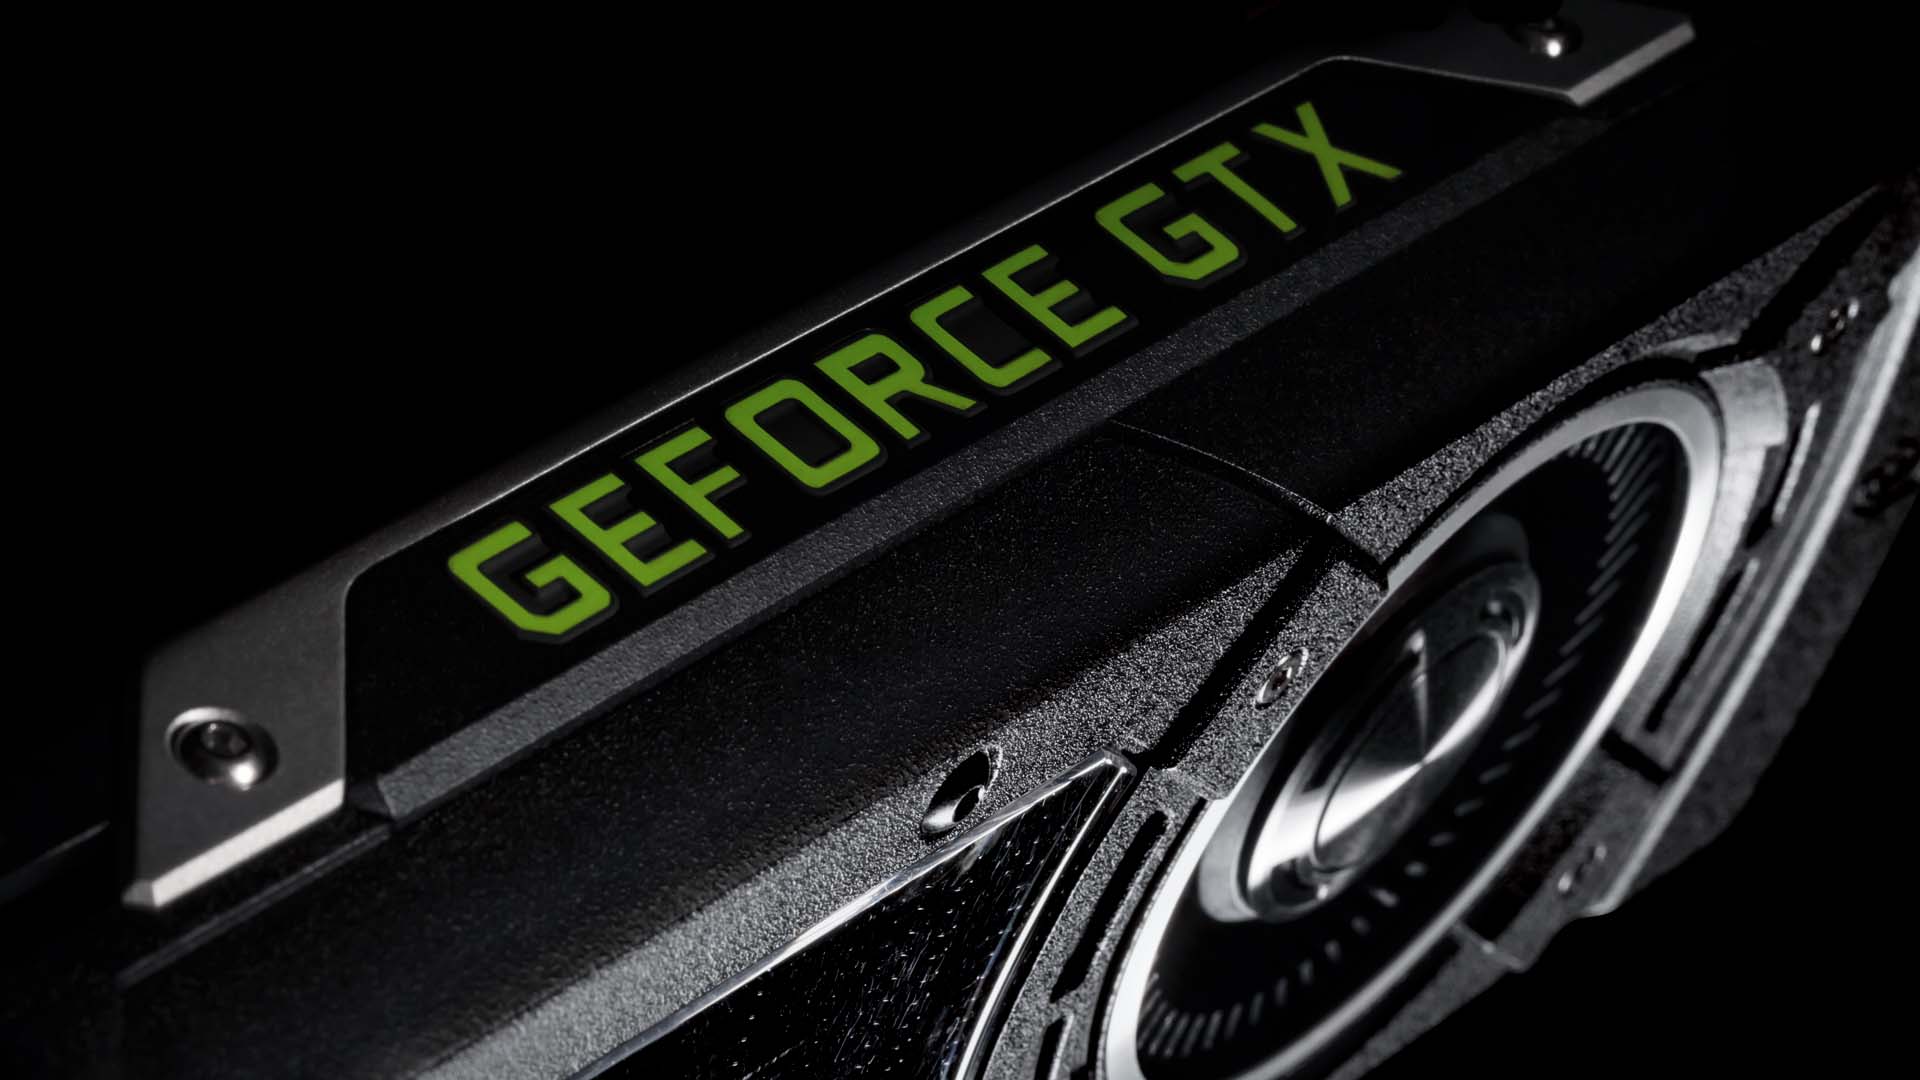 Immagine pubblicata in relazione al seguente contenuto: NVIDIA potrebbe lanciare a ottobre le GeForce GTX 1050 Ti e GTX 1050 | Nome immagine: news24991_NVIDIA-GeForce-GTX_1.jpg